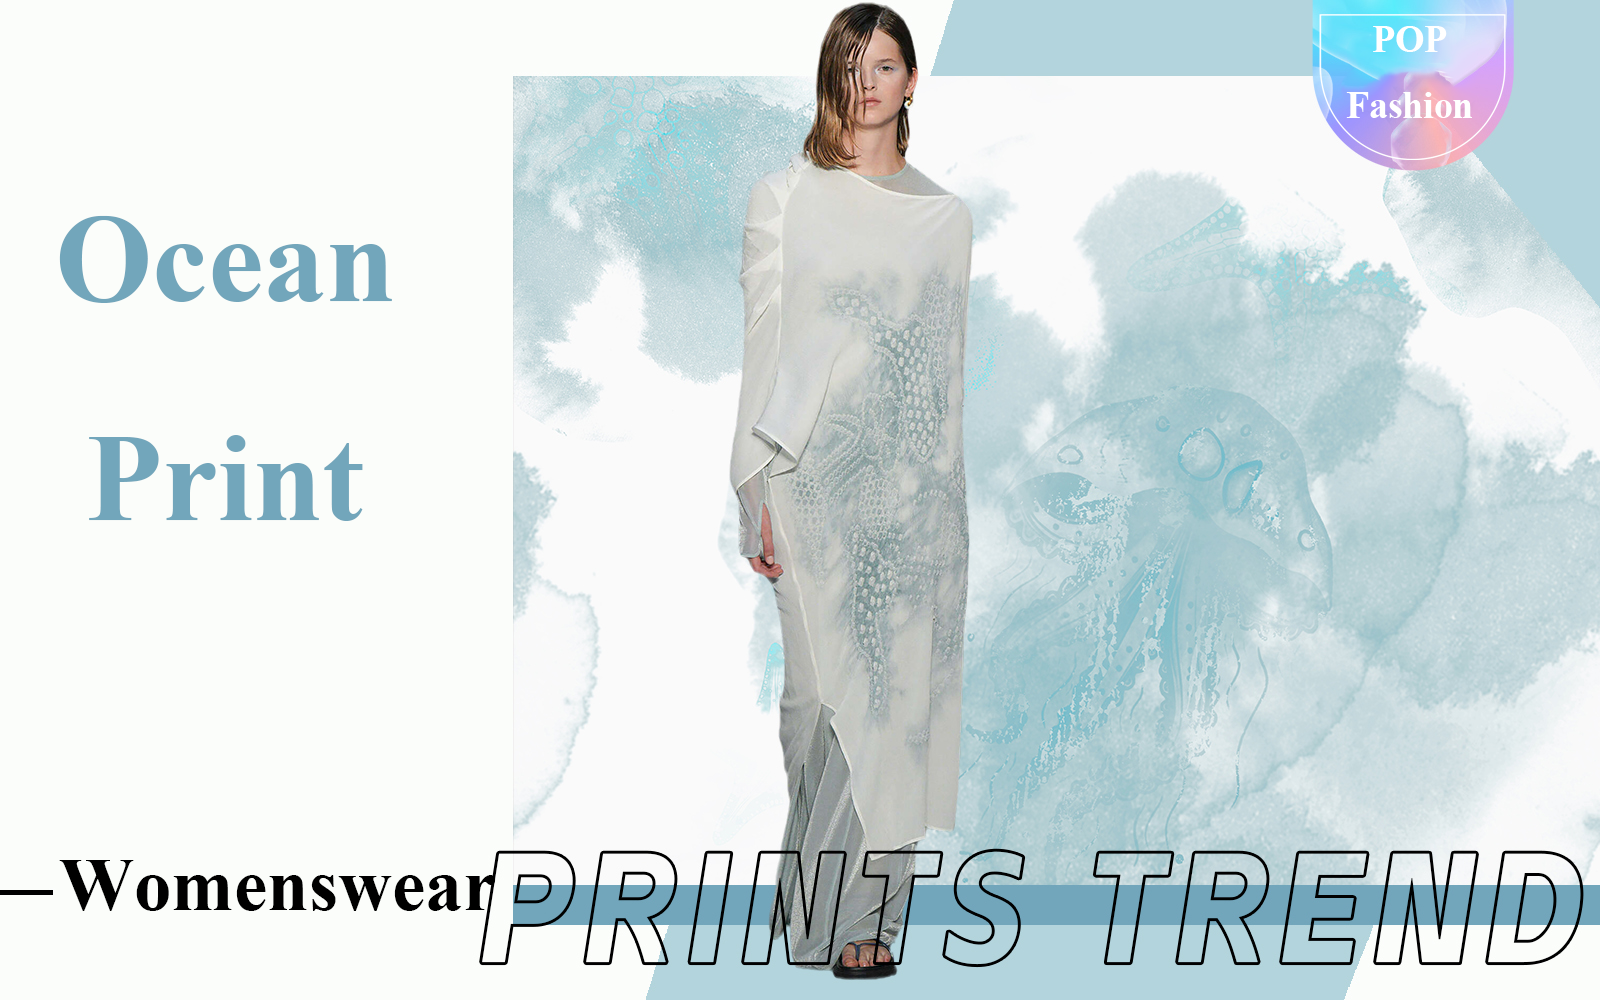 Ocean Prints -- The Pattern Trend for Womenswear